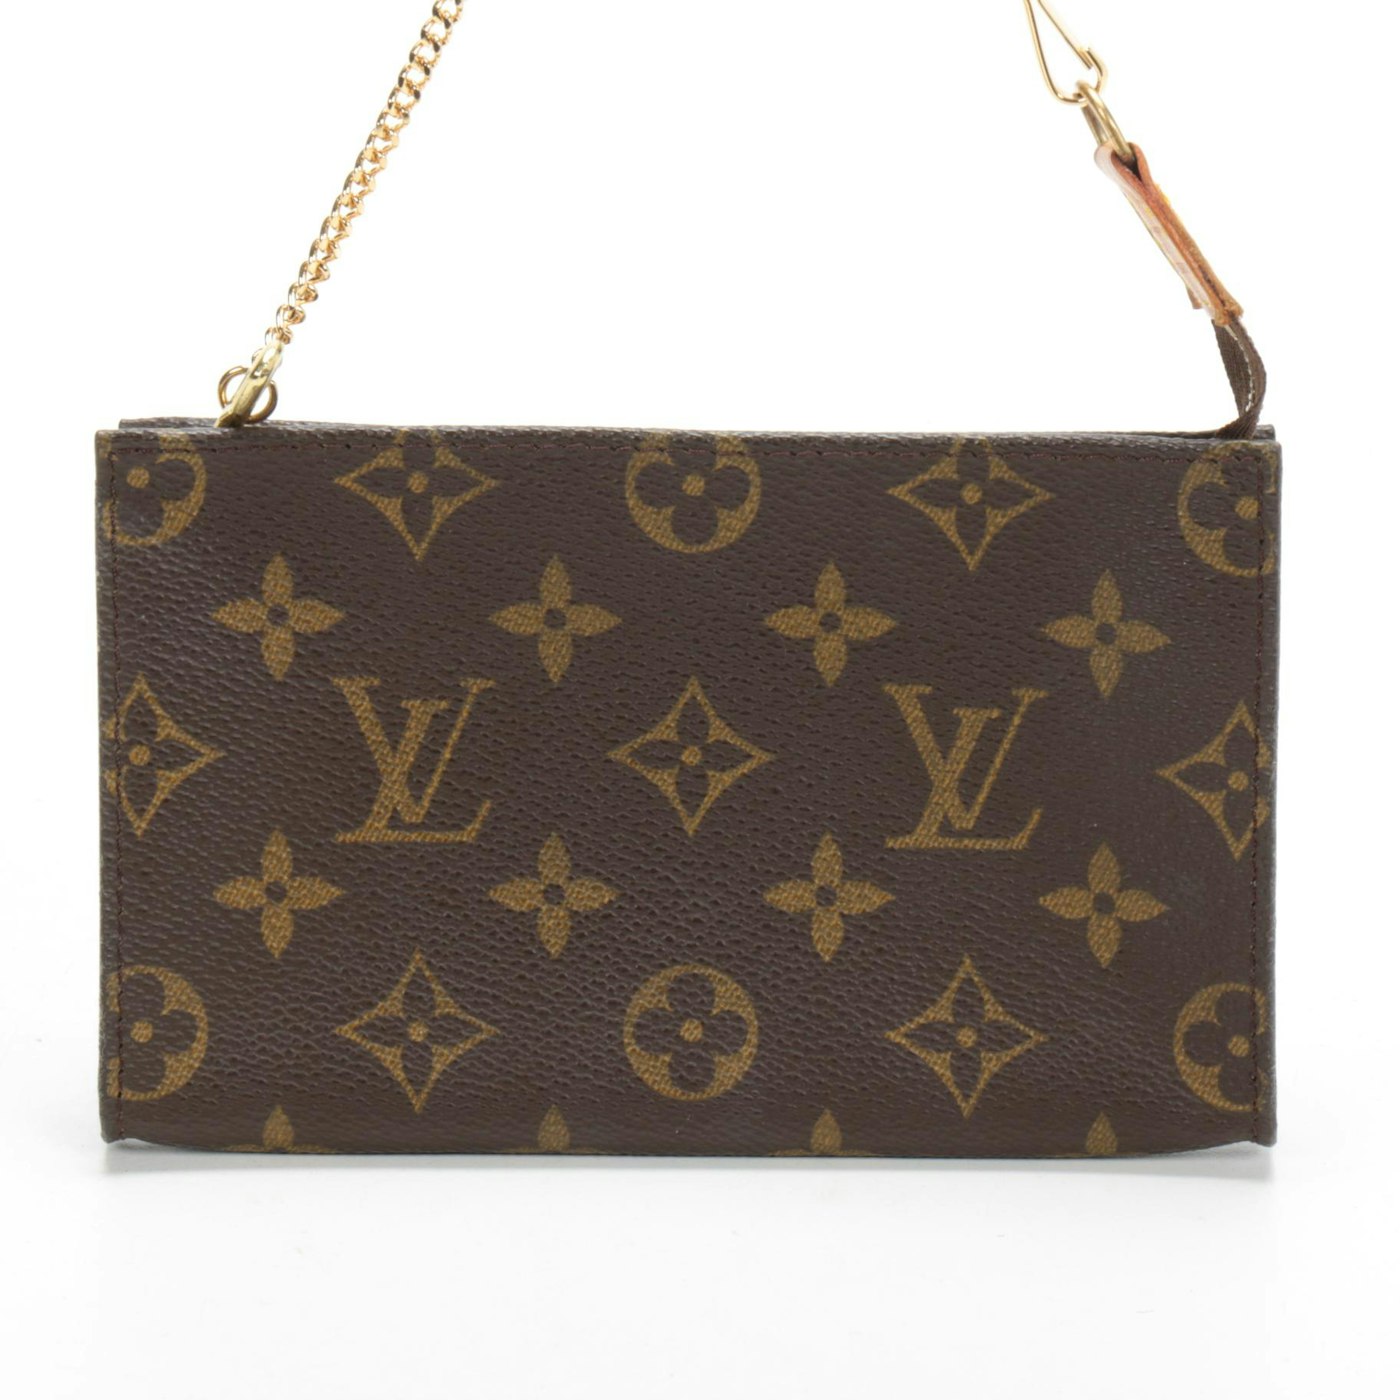 Louis Vuitton Mini Pochette in Monogram Canvas with Chain Strap | EBTH